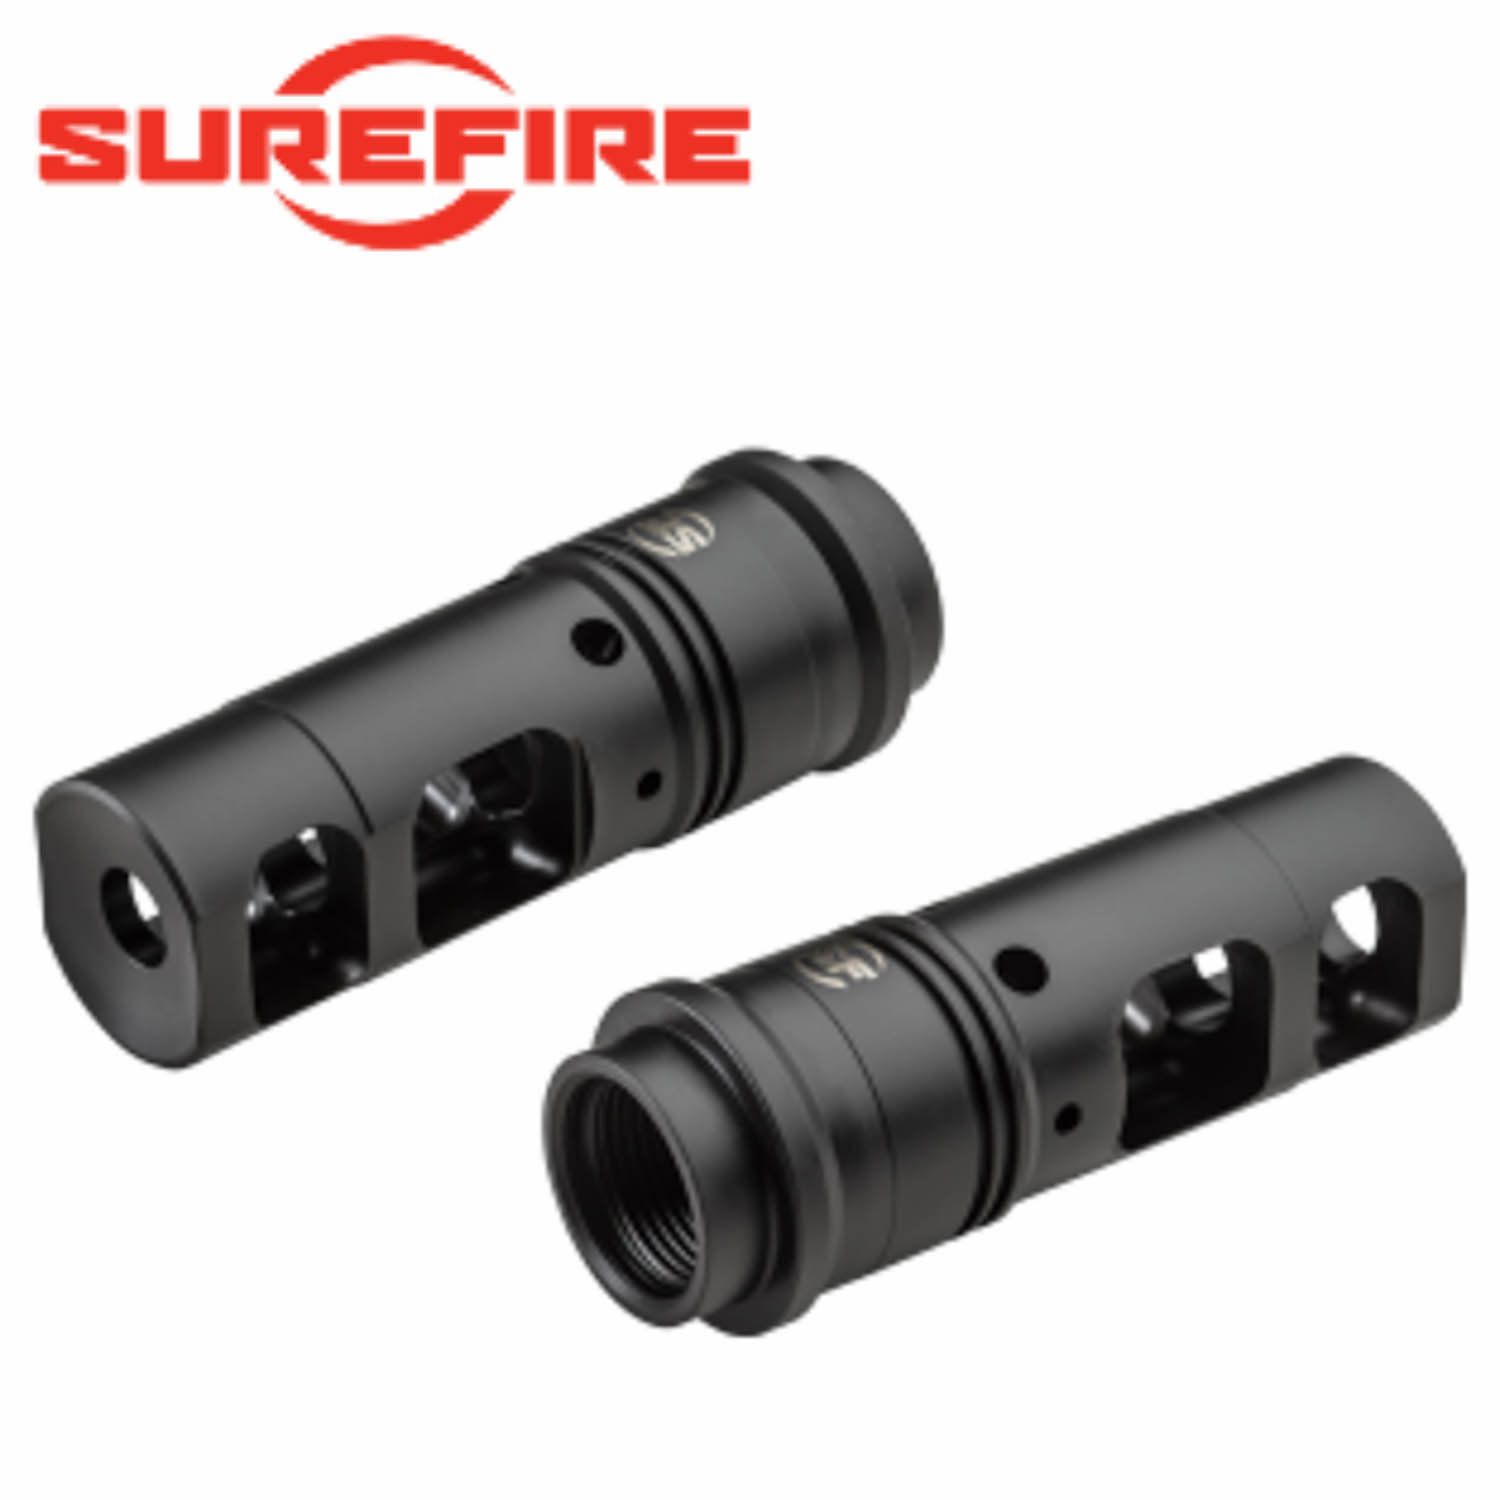 Surefire Muzzle Brake / Suppressor Adapter for 3/4-24 Thread 338